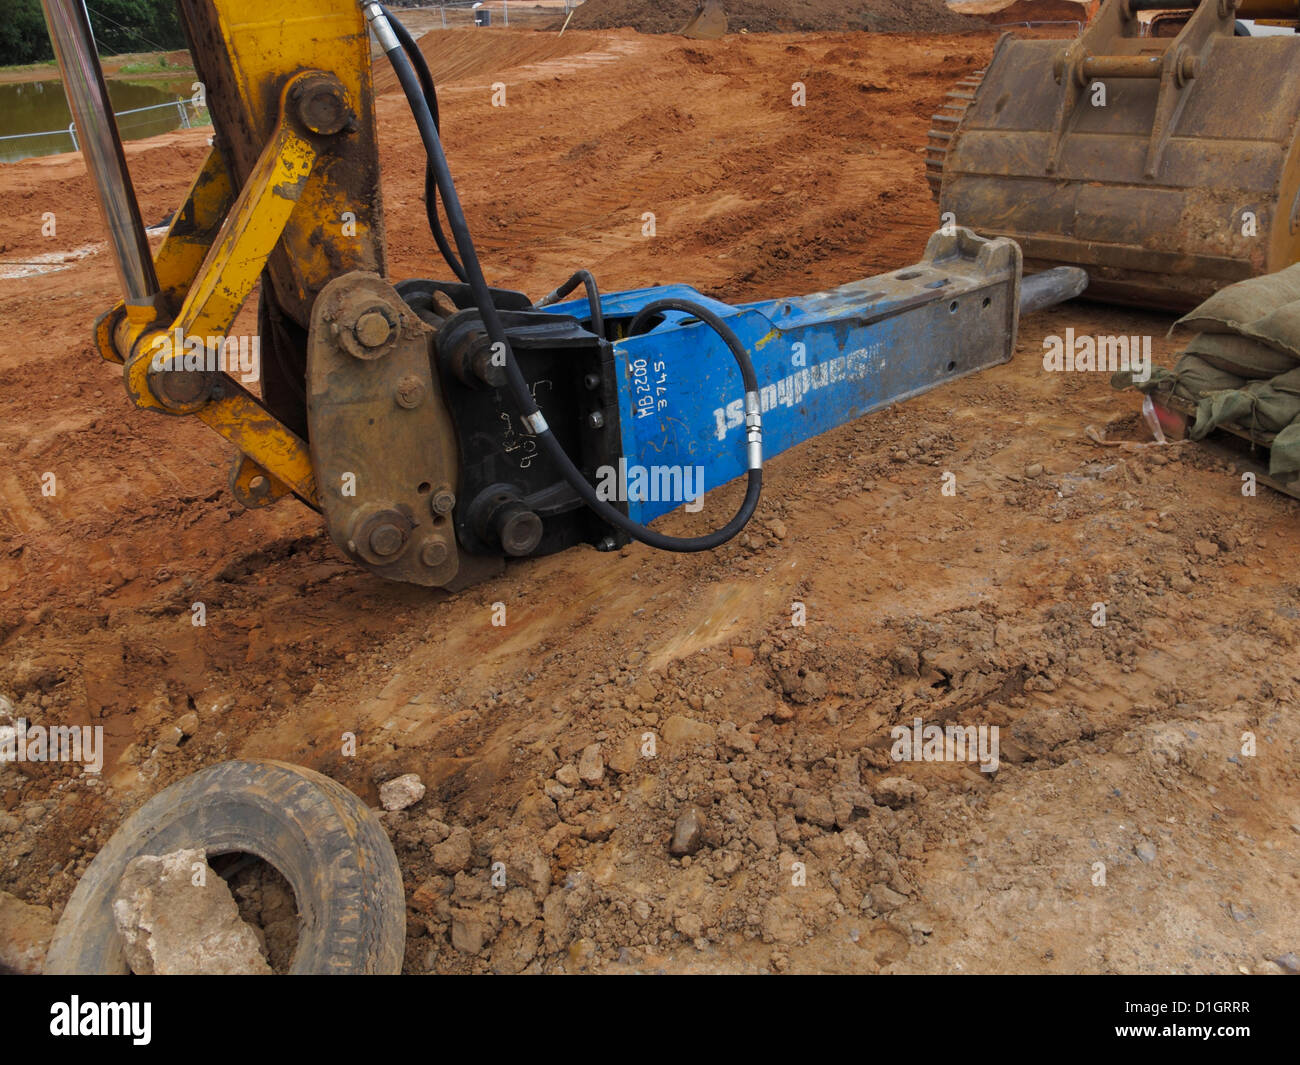 Heavy duty monté pelle marteau hydraulique pneumatique drill point uk road construction site Banque D'Images